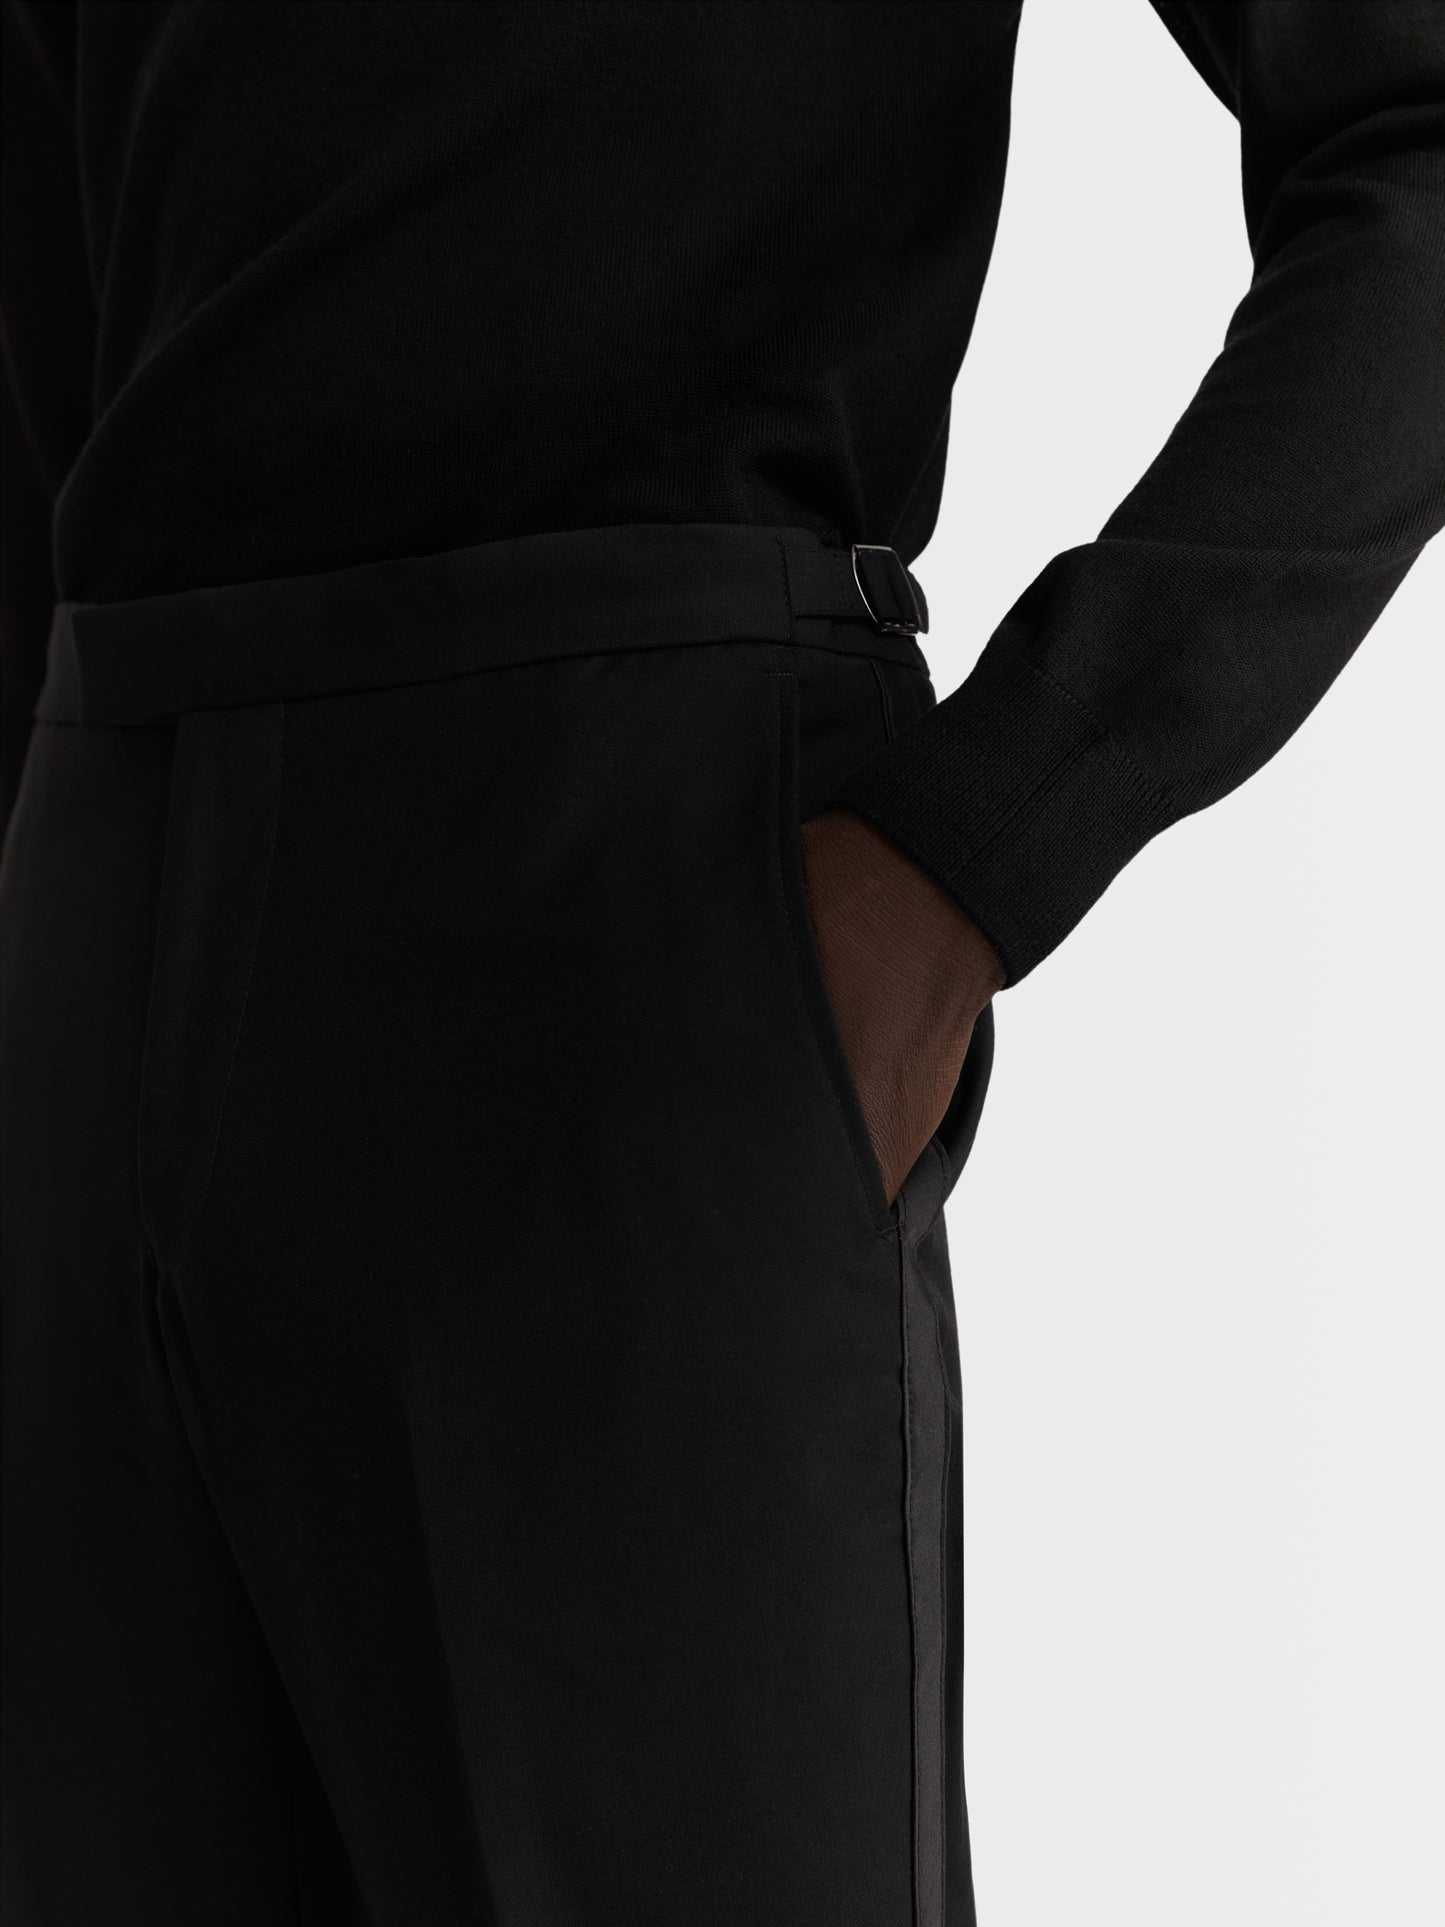 Chancery Premium Wool Regular Black Dinner Trouser